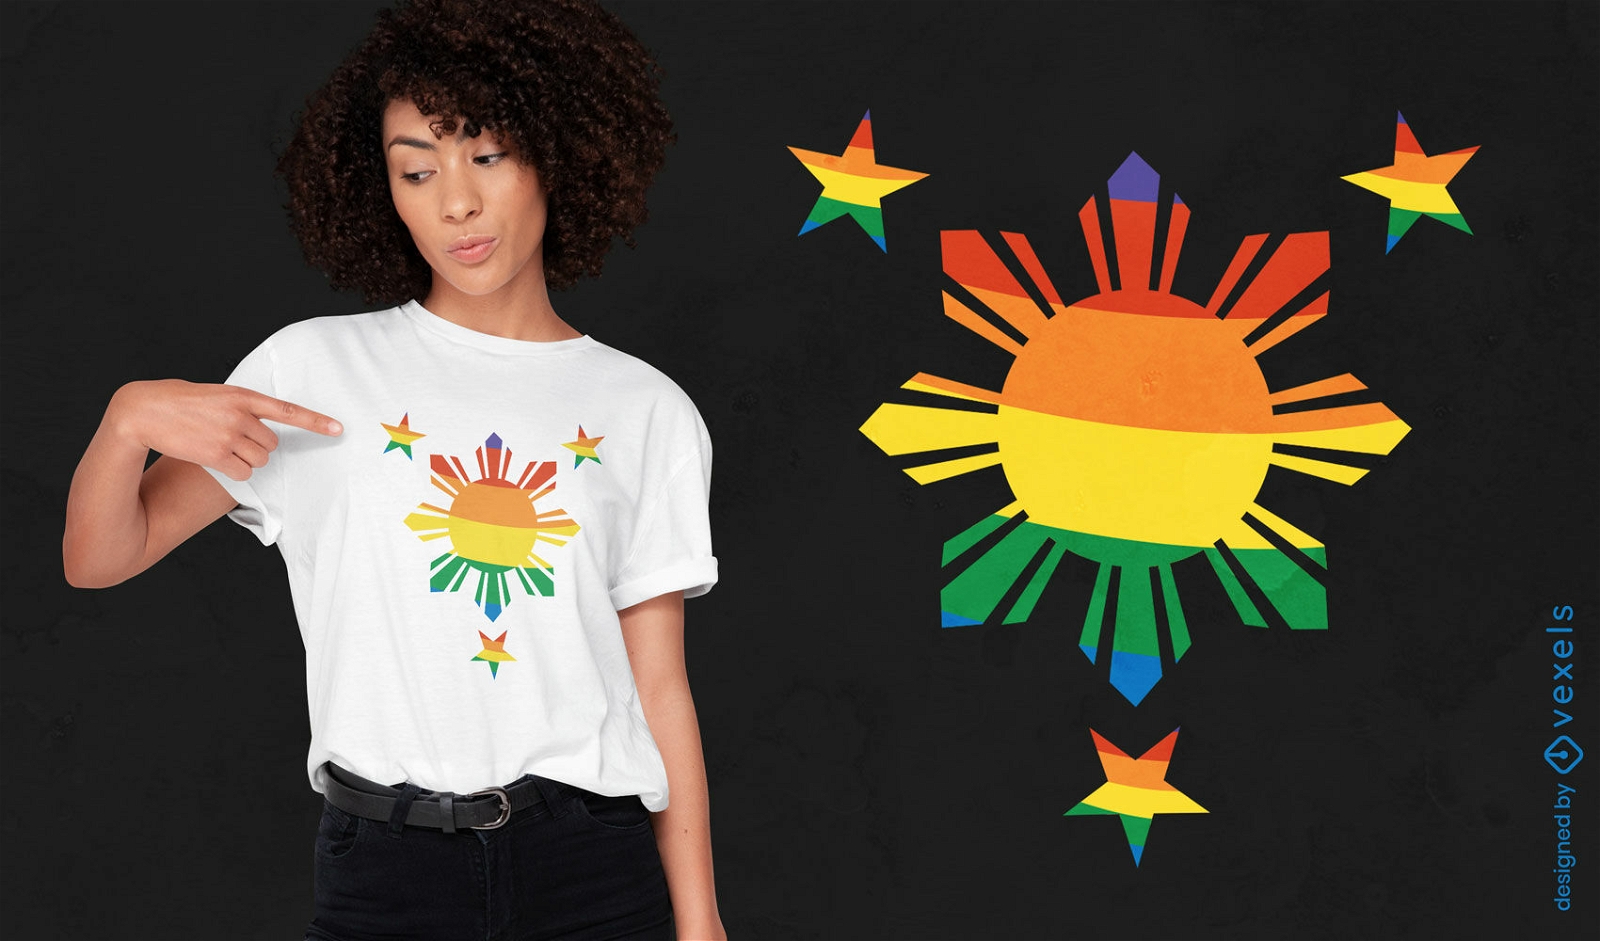 Philippines pride flag t-shirt design